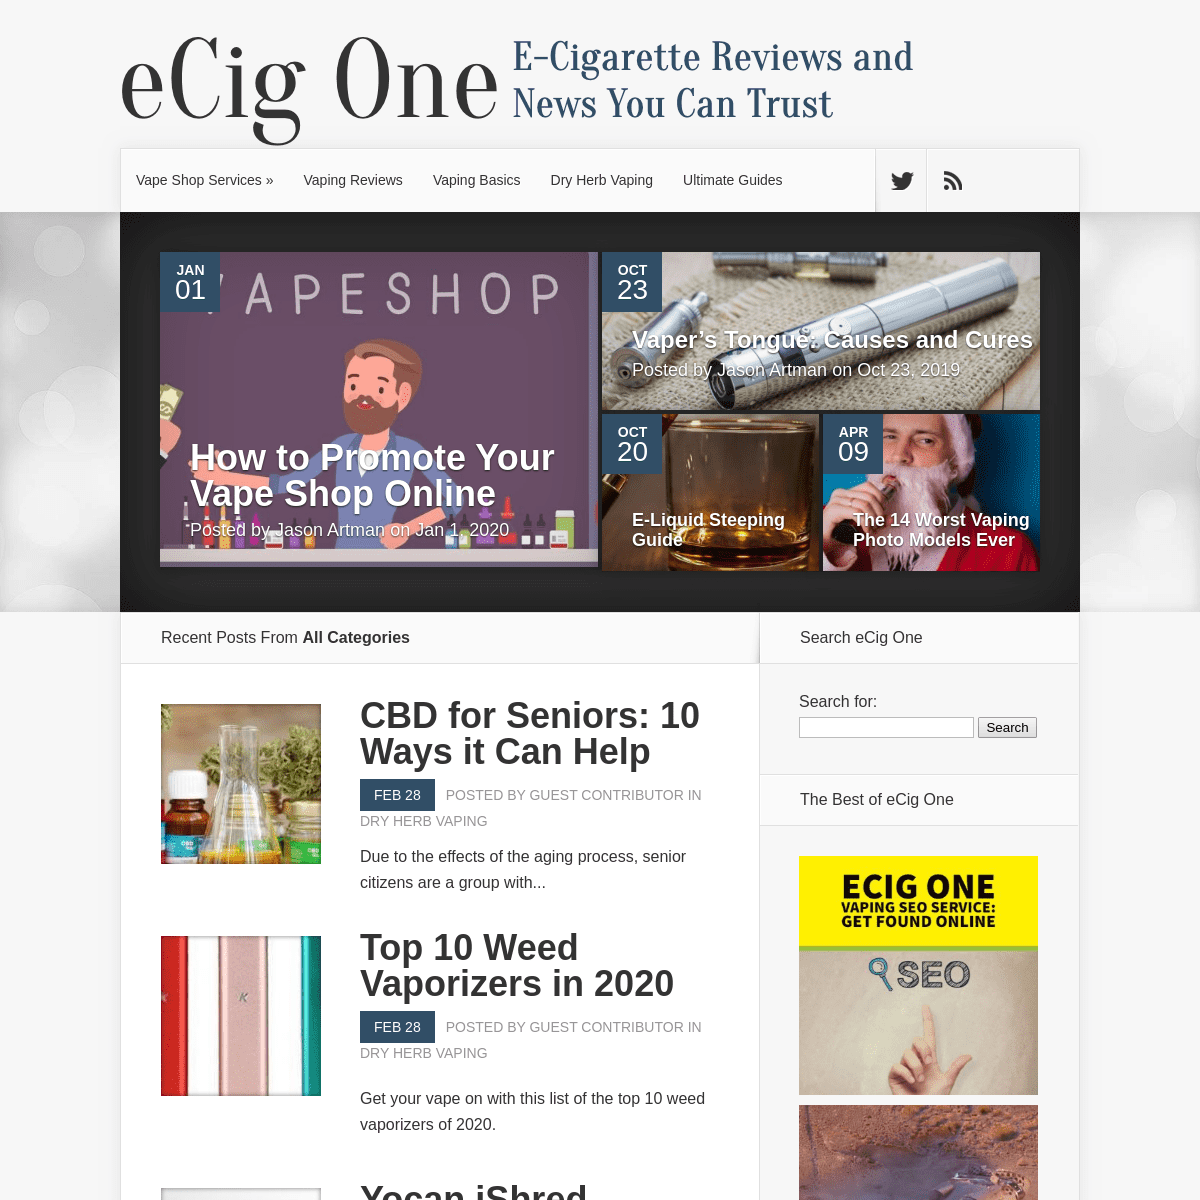 A complete backup of ecigone.com